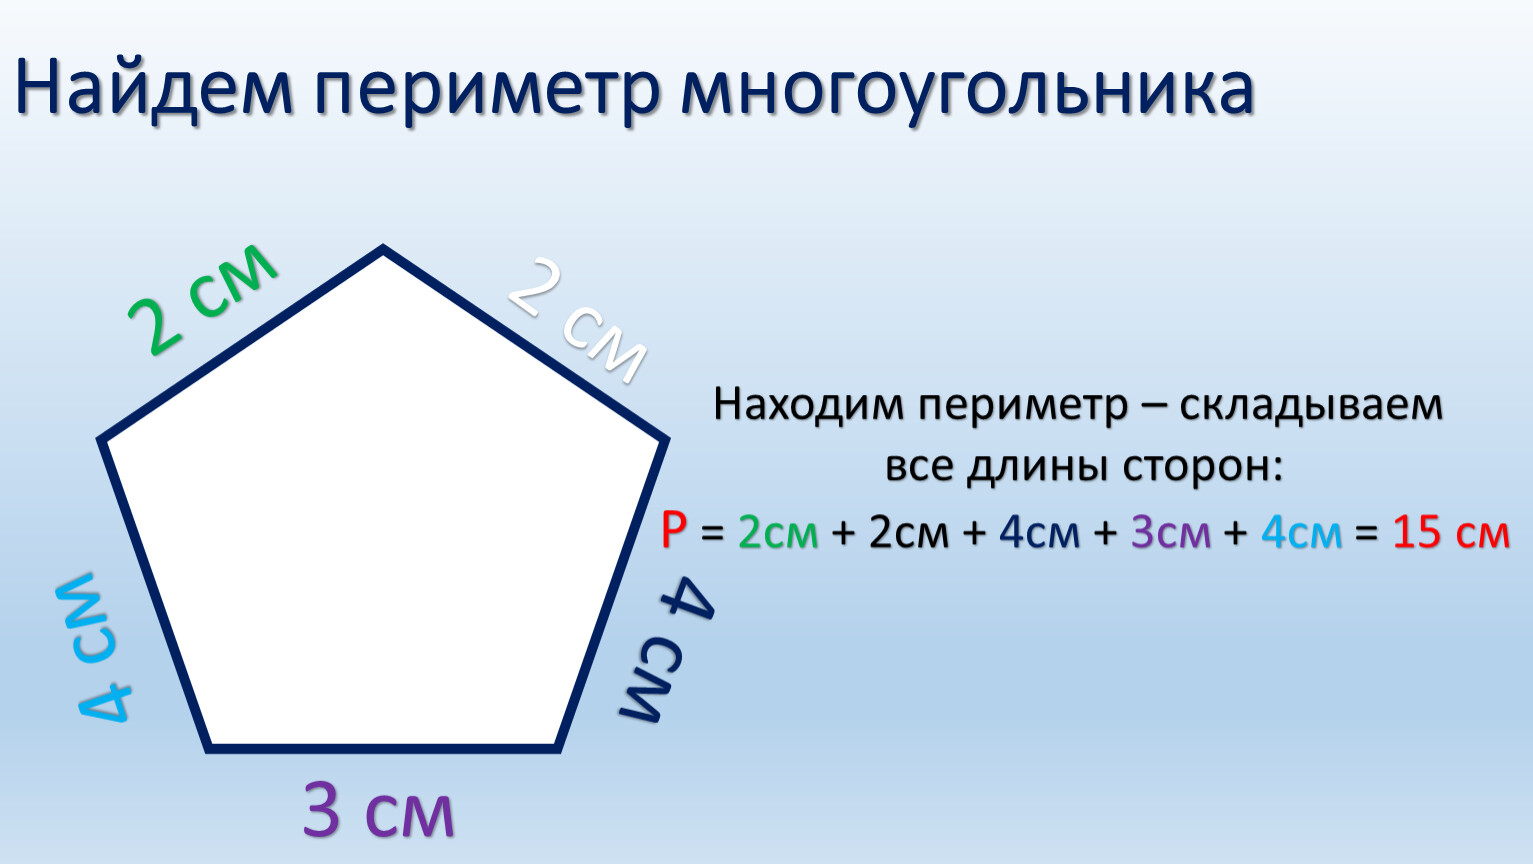 Многоугольник имеет 3 стороны. Периметр многоугольника формула 4. Периметр многоугольника формула 2. Вычислить периметр многоугольника. Формула нахождения периметра многоугольника.